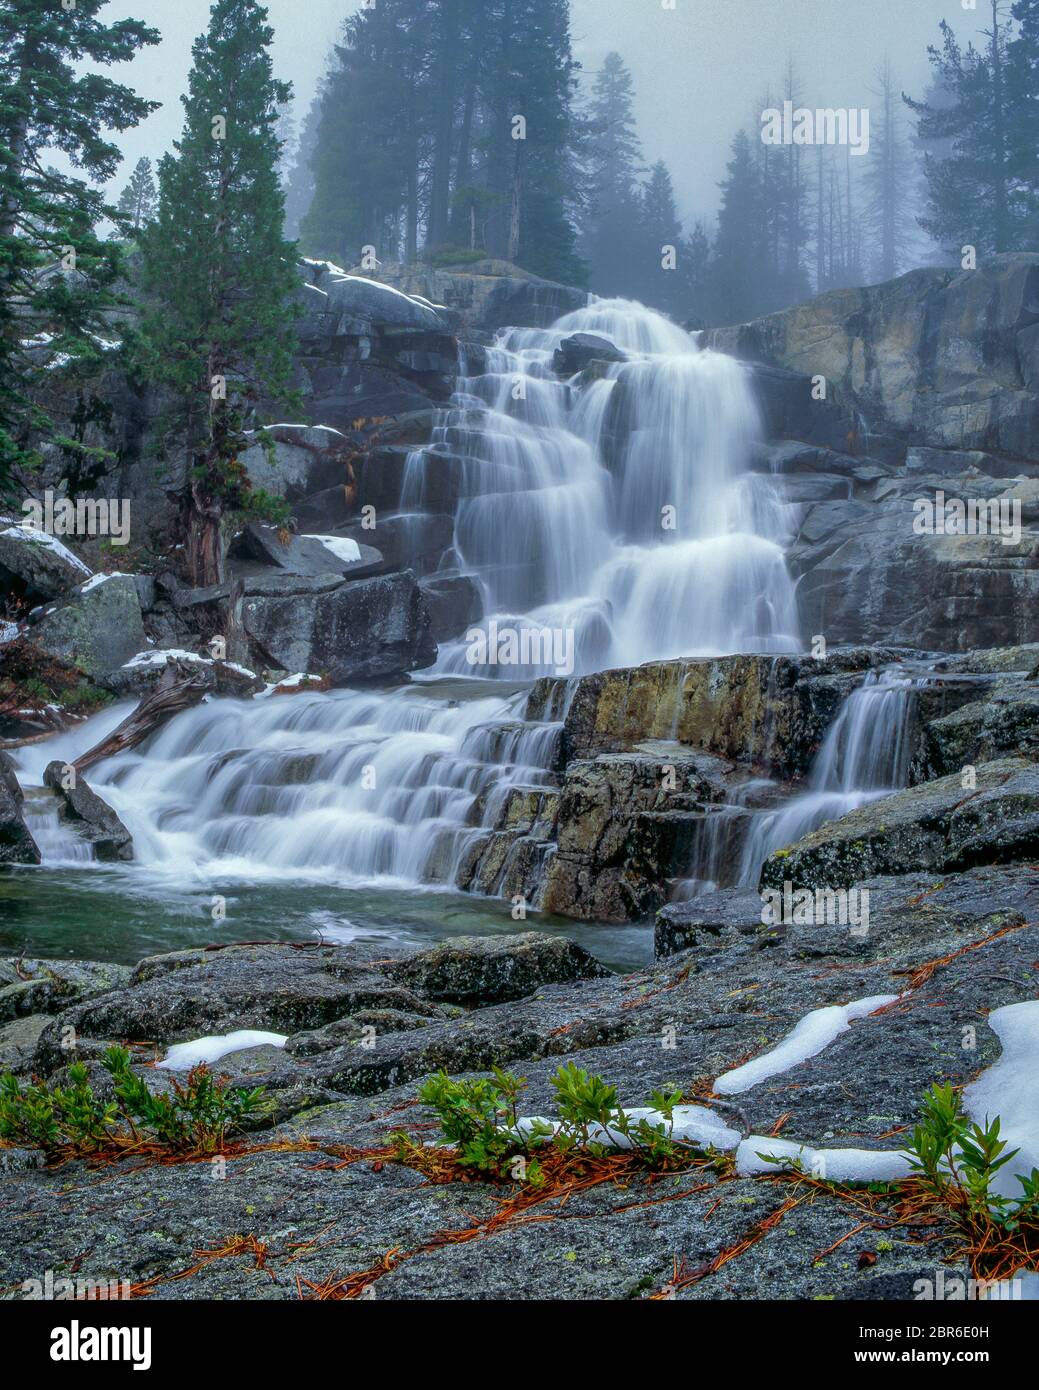 Canyon Creek Falls, Trinity Alps, Shasta-Trinity National Forest, California Stock Photo